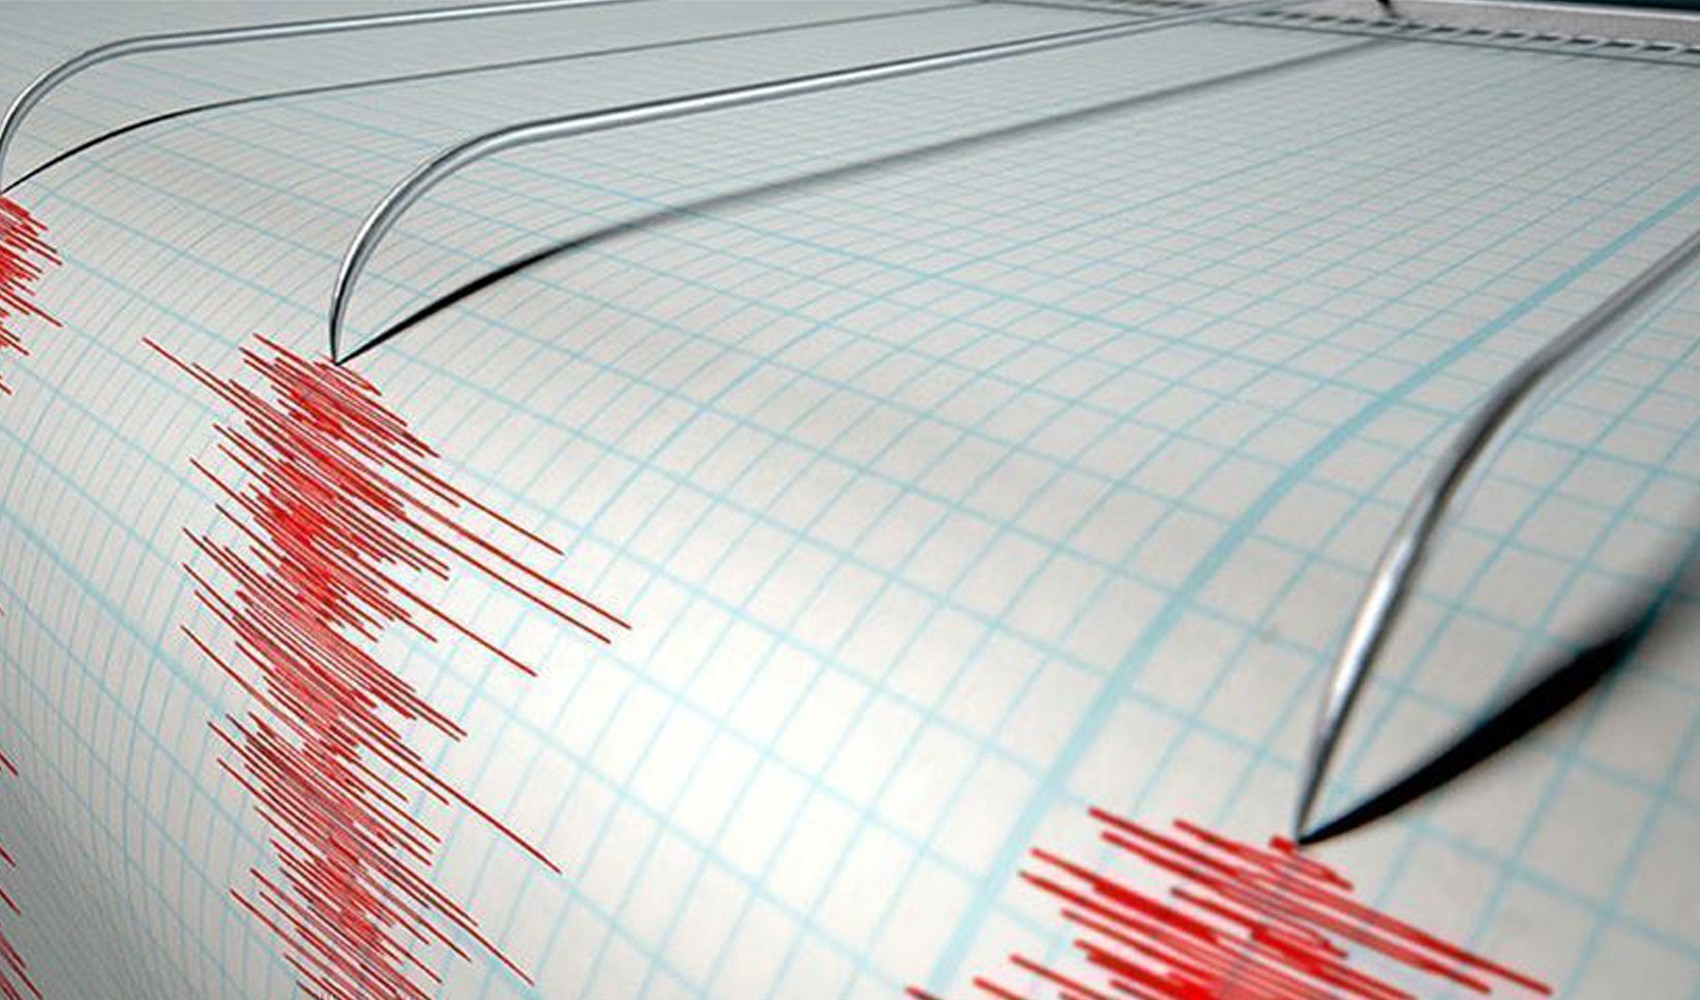 Gemlik'ten sonra Malatya'da da deprem meydana geldi!